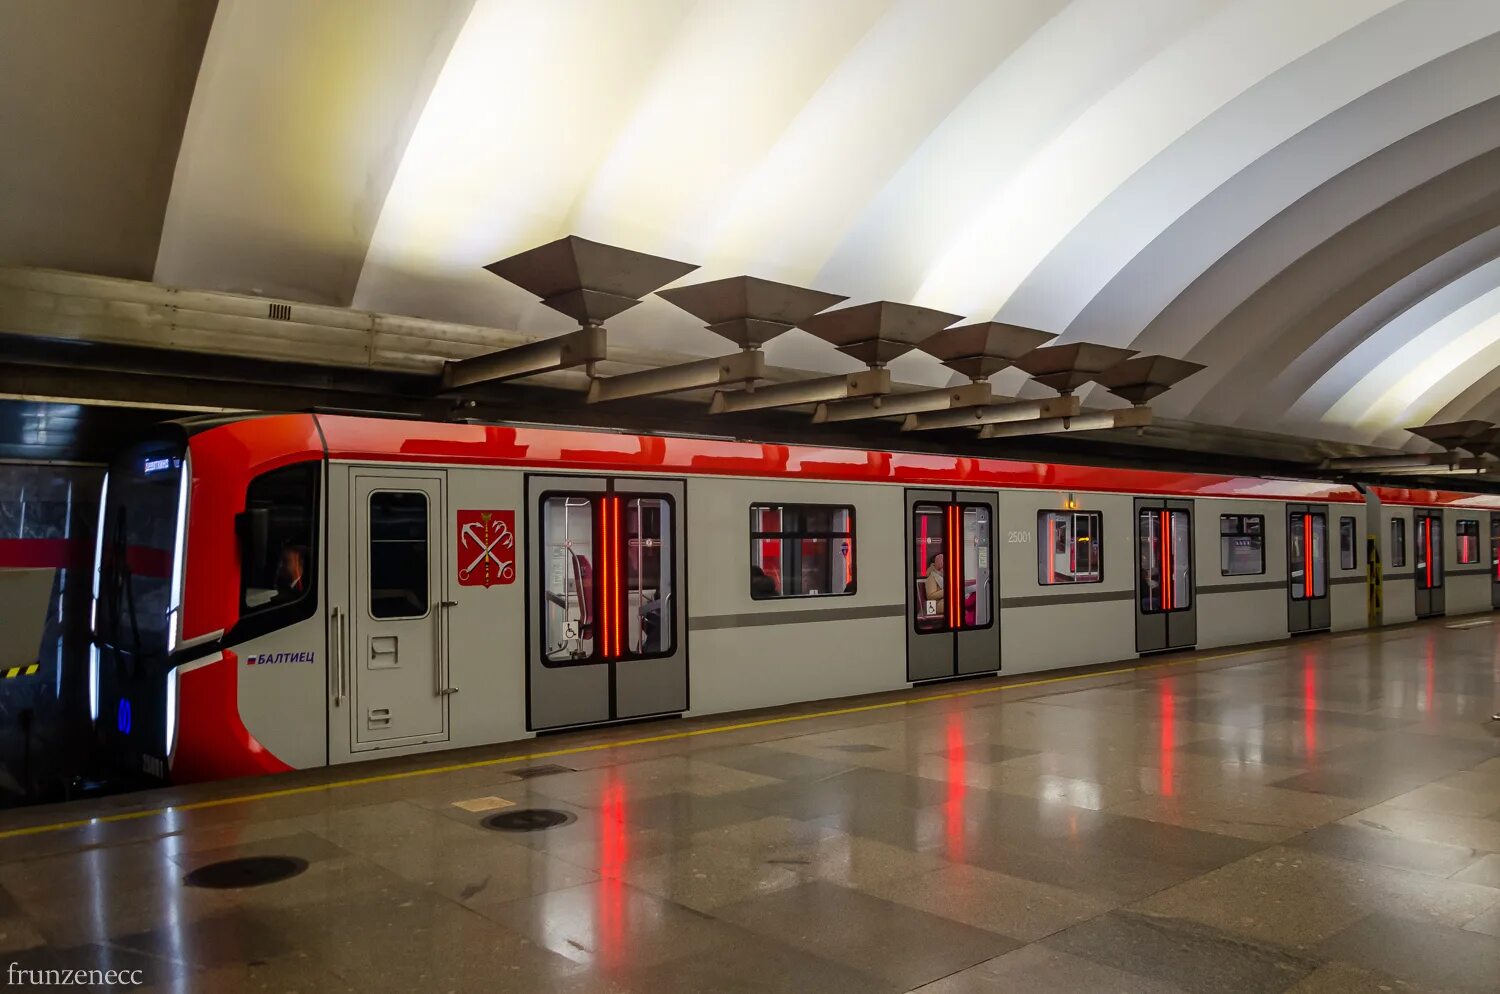 Красный балтиец метро. 81-725 Балтиец. Вагоны метро Балтиец Санкт-Петербург. Вагон Балтиец метро СПБ. Балтиец вагон 81-725.